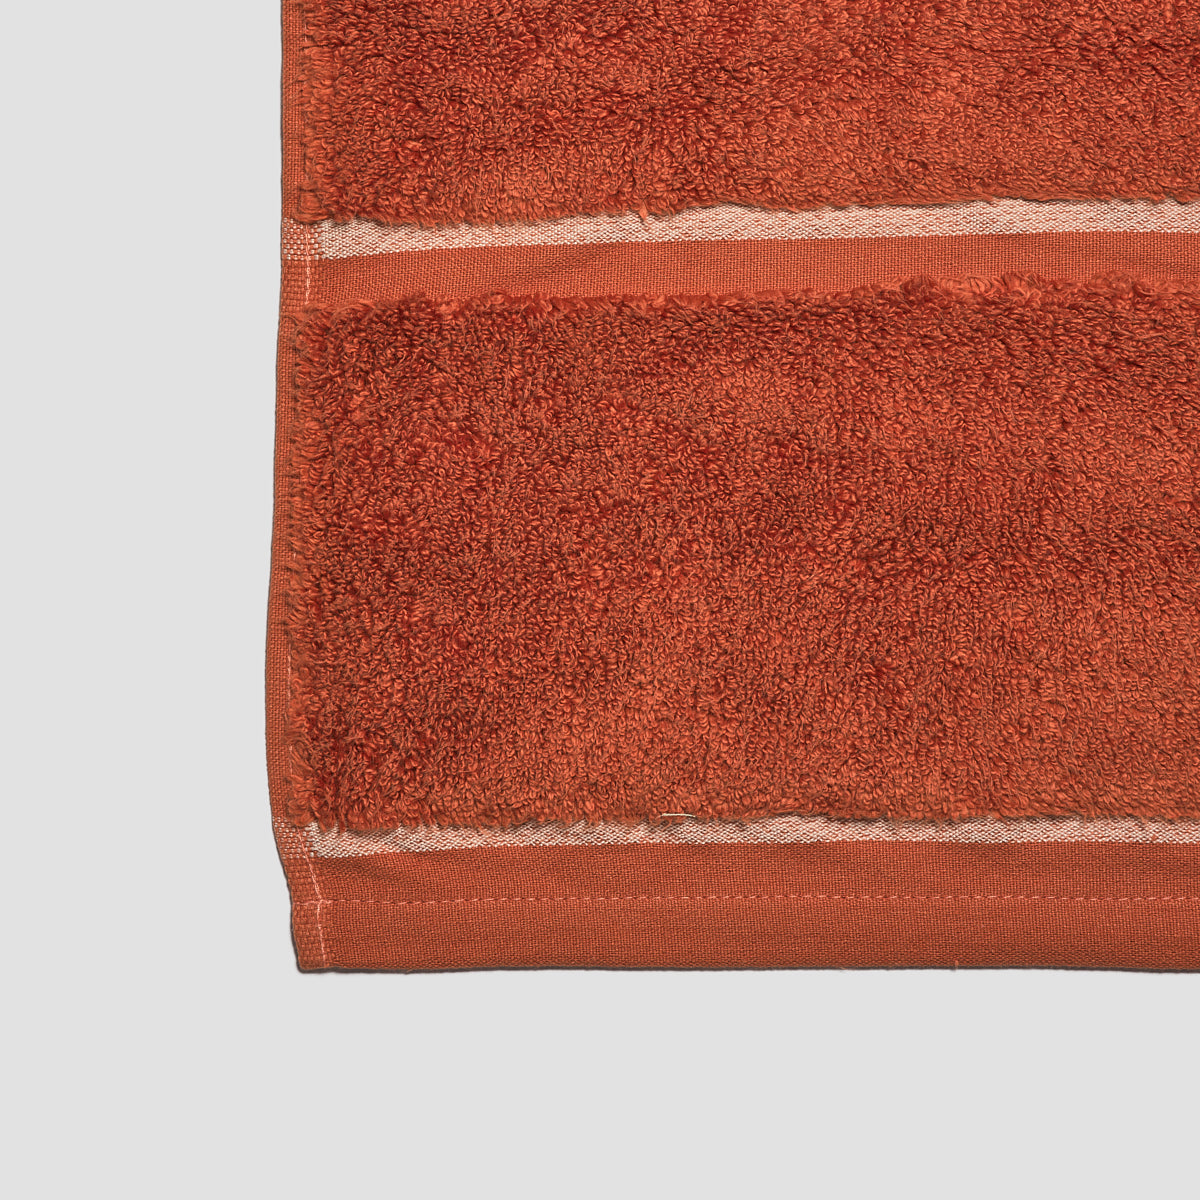  Wamsutta Hygro Duet Hand Towel (Sand) : Home & Kitchen